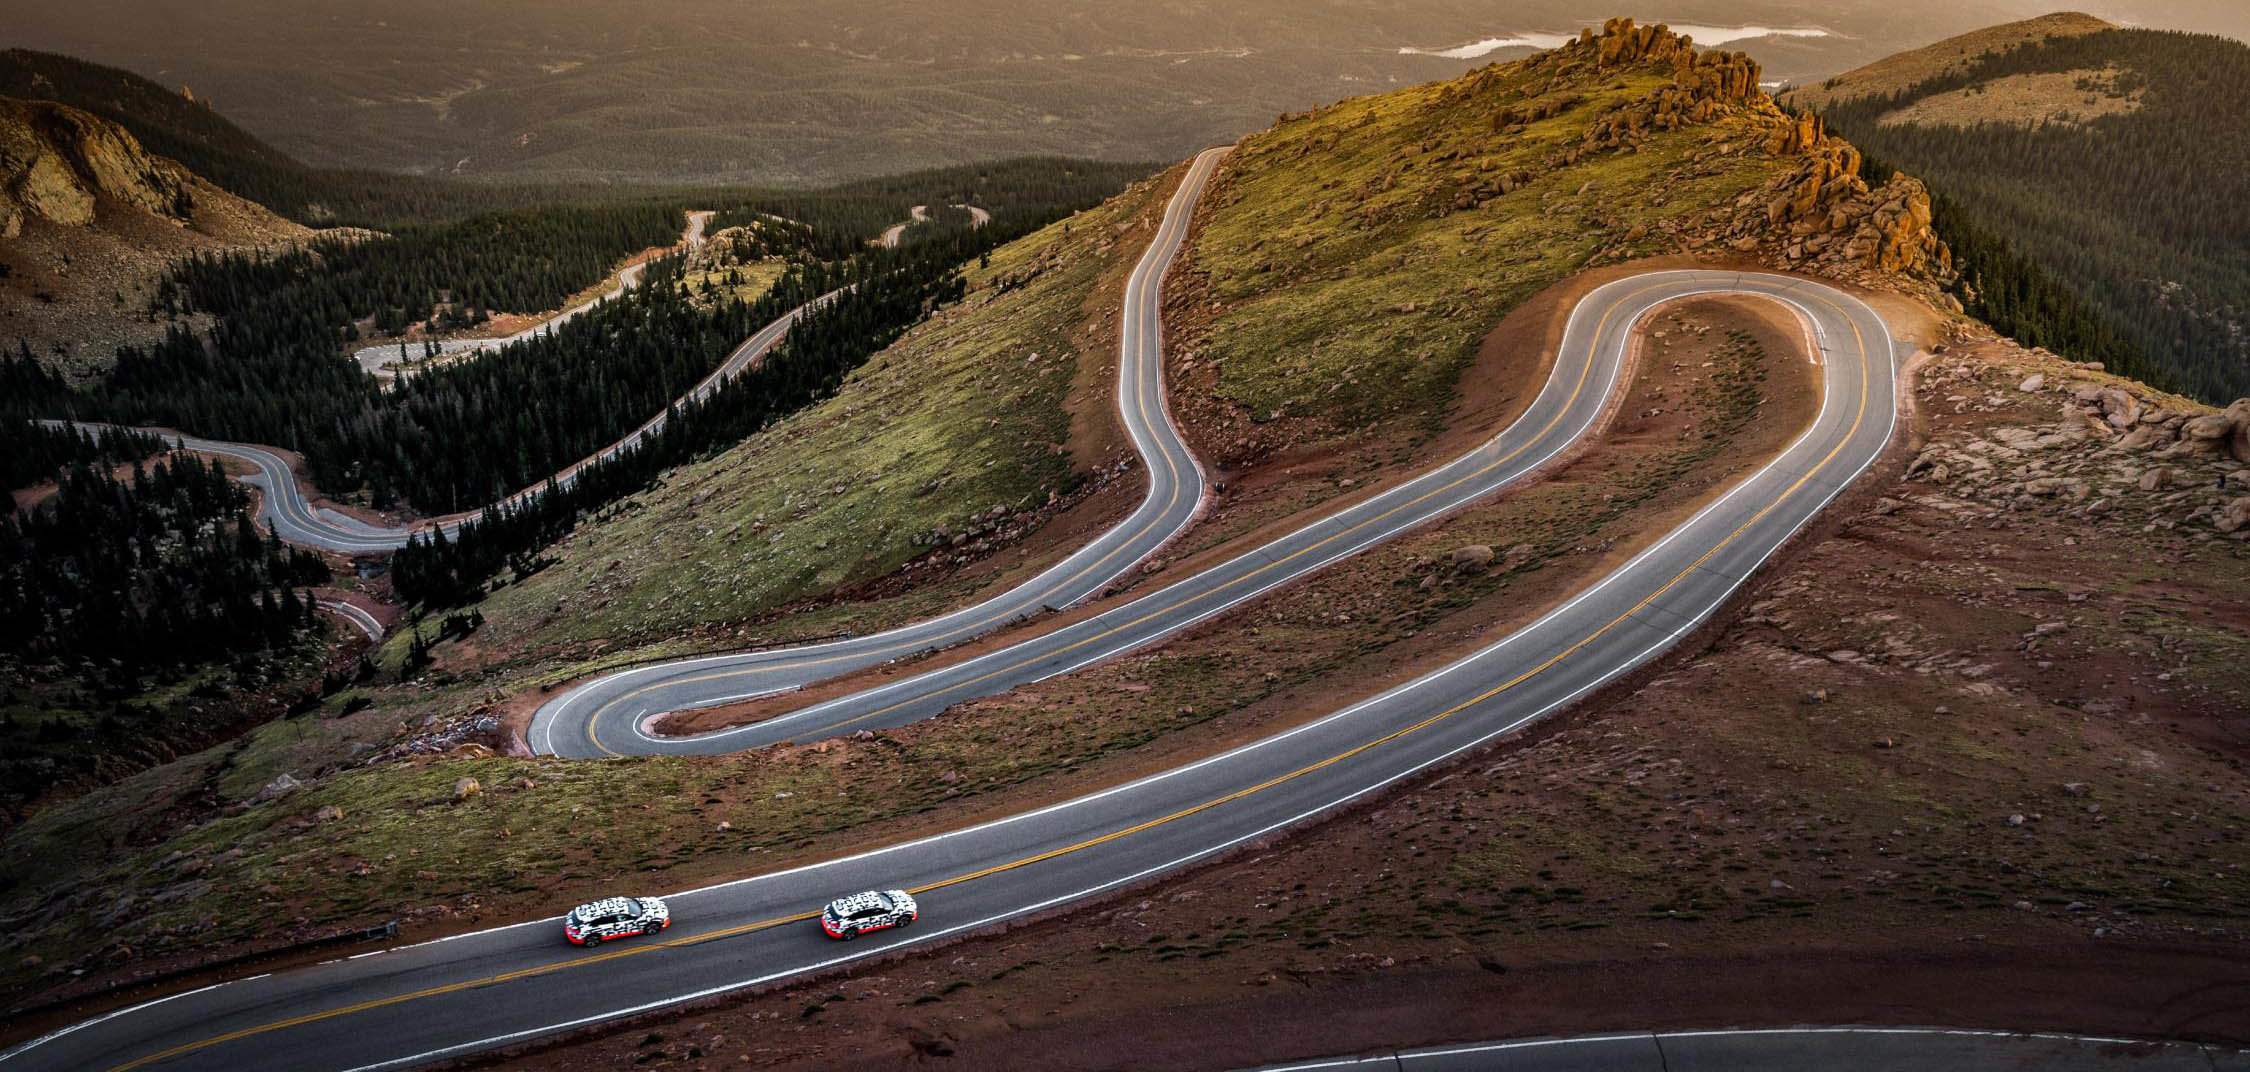 Una parte de los 31 kilómetros de descenso de Peakes Peak, recorridos por el Audi e-tron